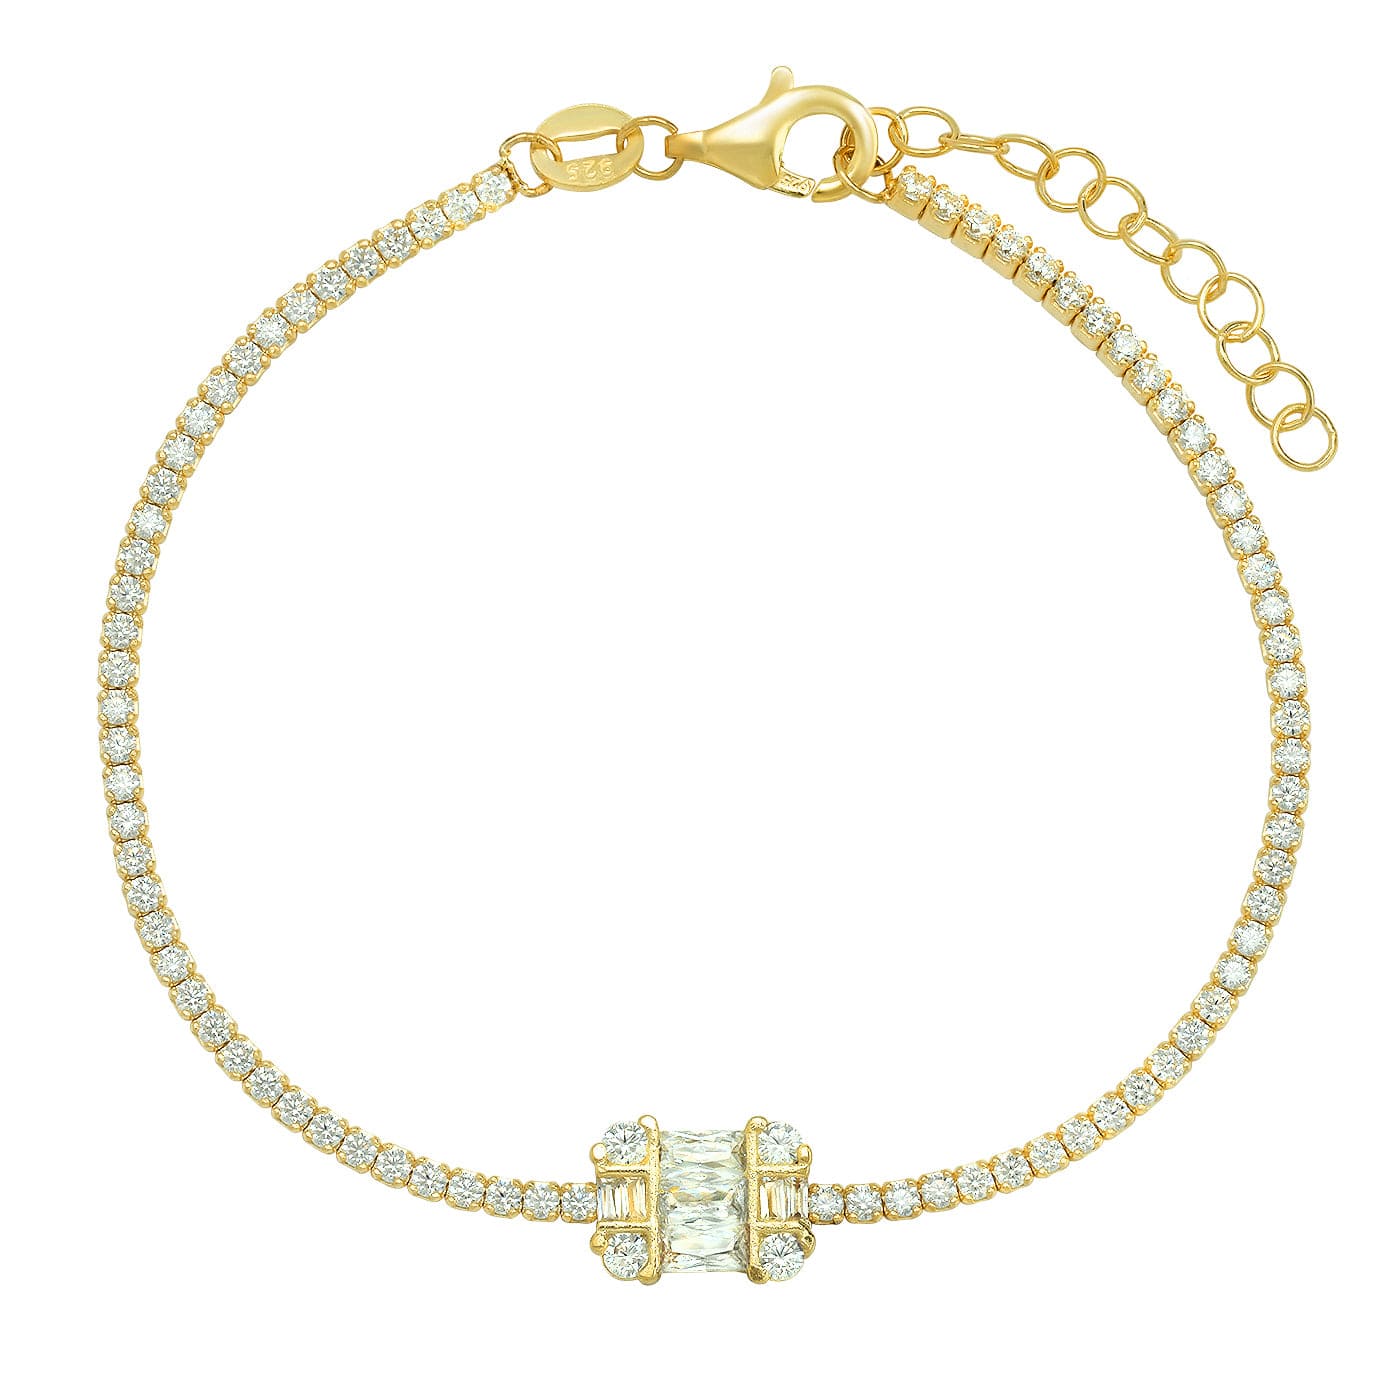 TAI JEWELRY Bracelet Gold Vermeil Tennis Bracelet With Vintage Baguette Accents